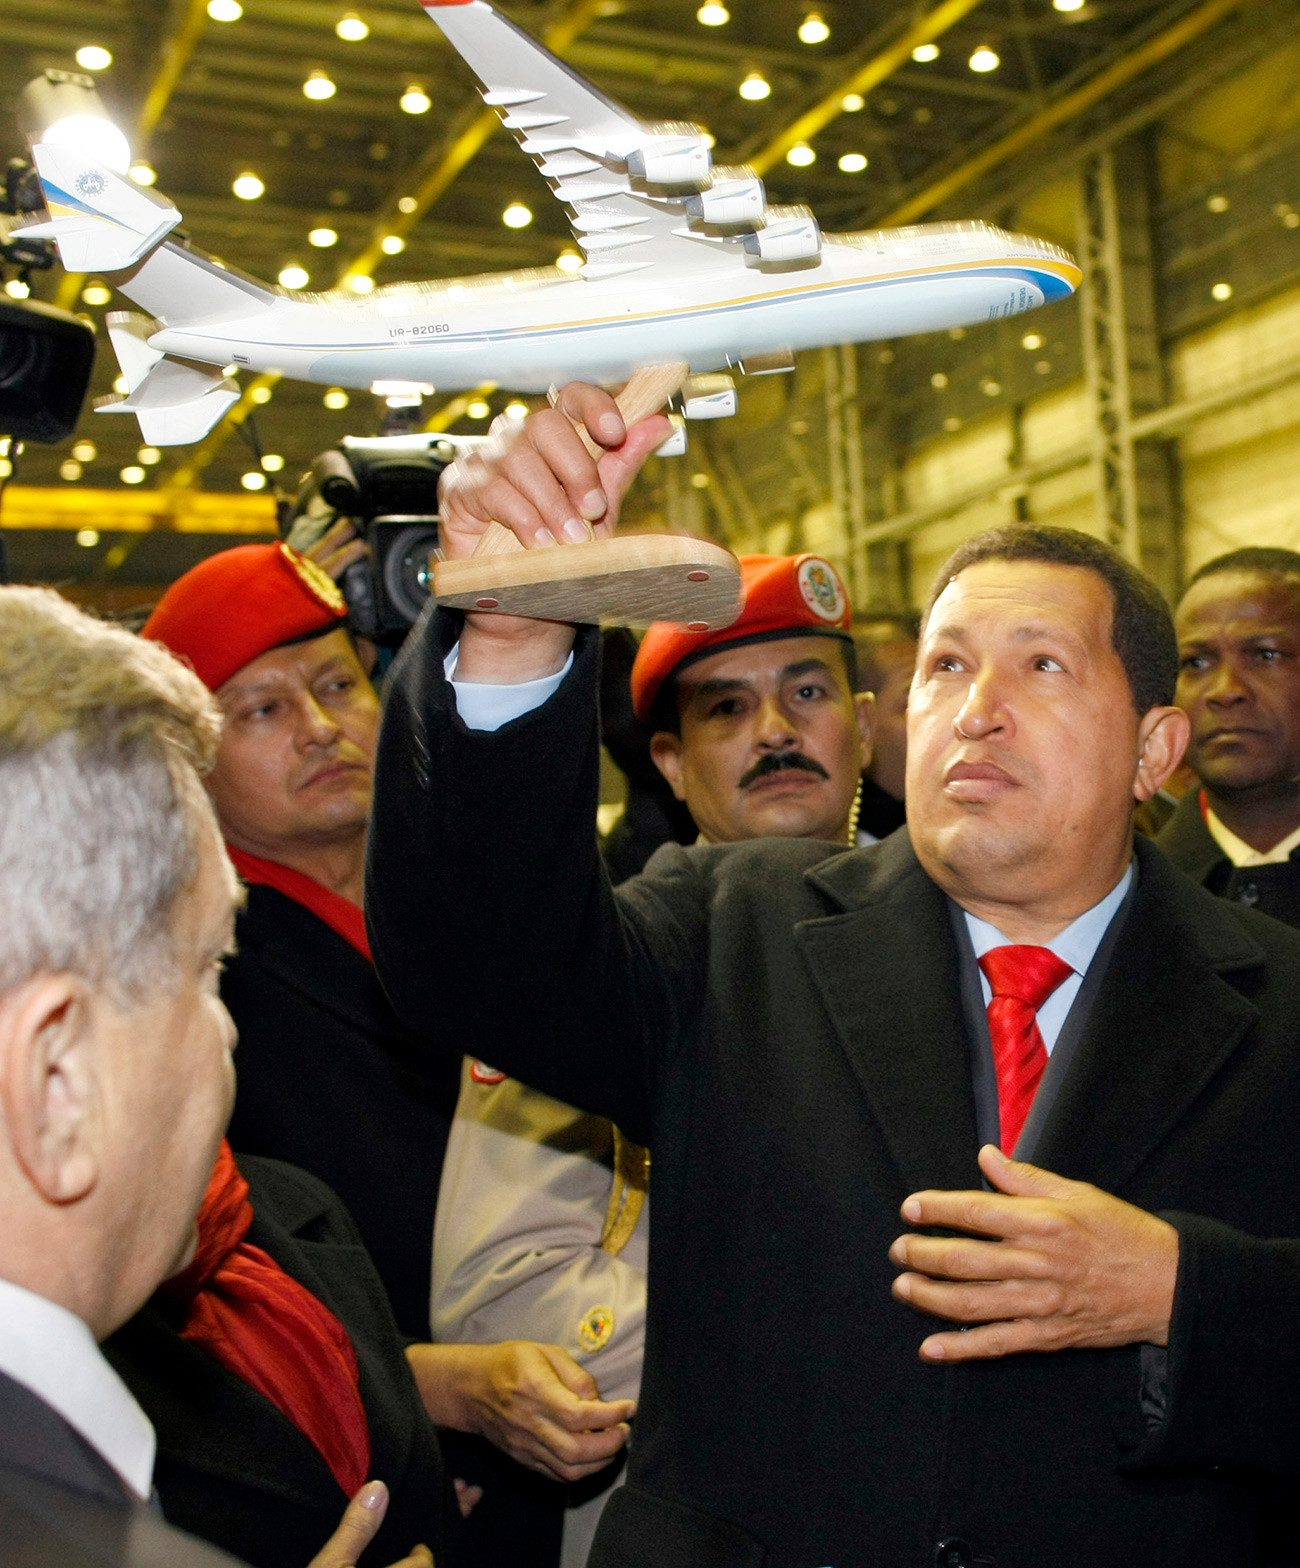 Präsident von Venezuela Hugo Chavez mit einem Model der An-225 Mrija